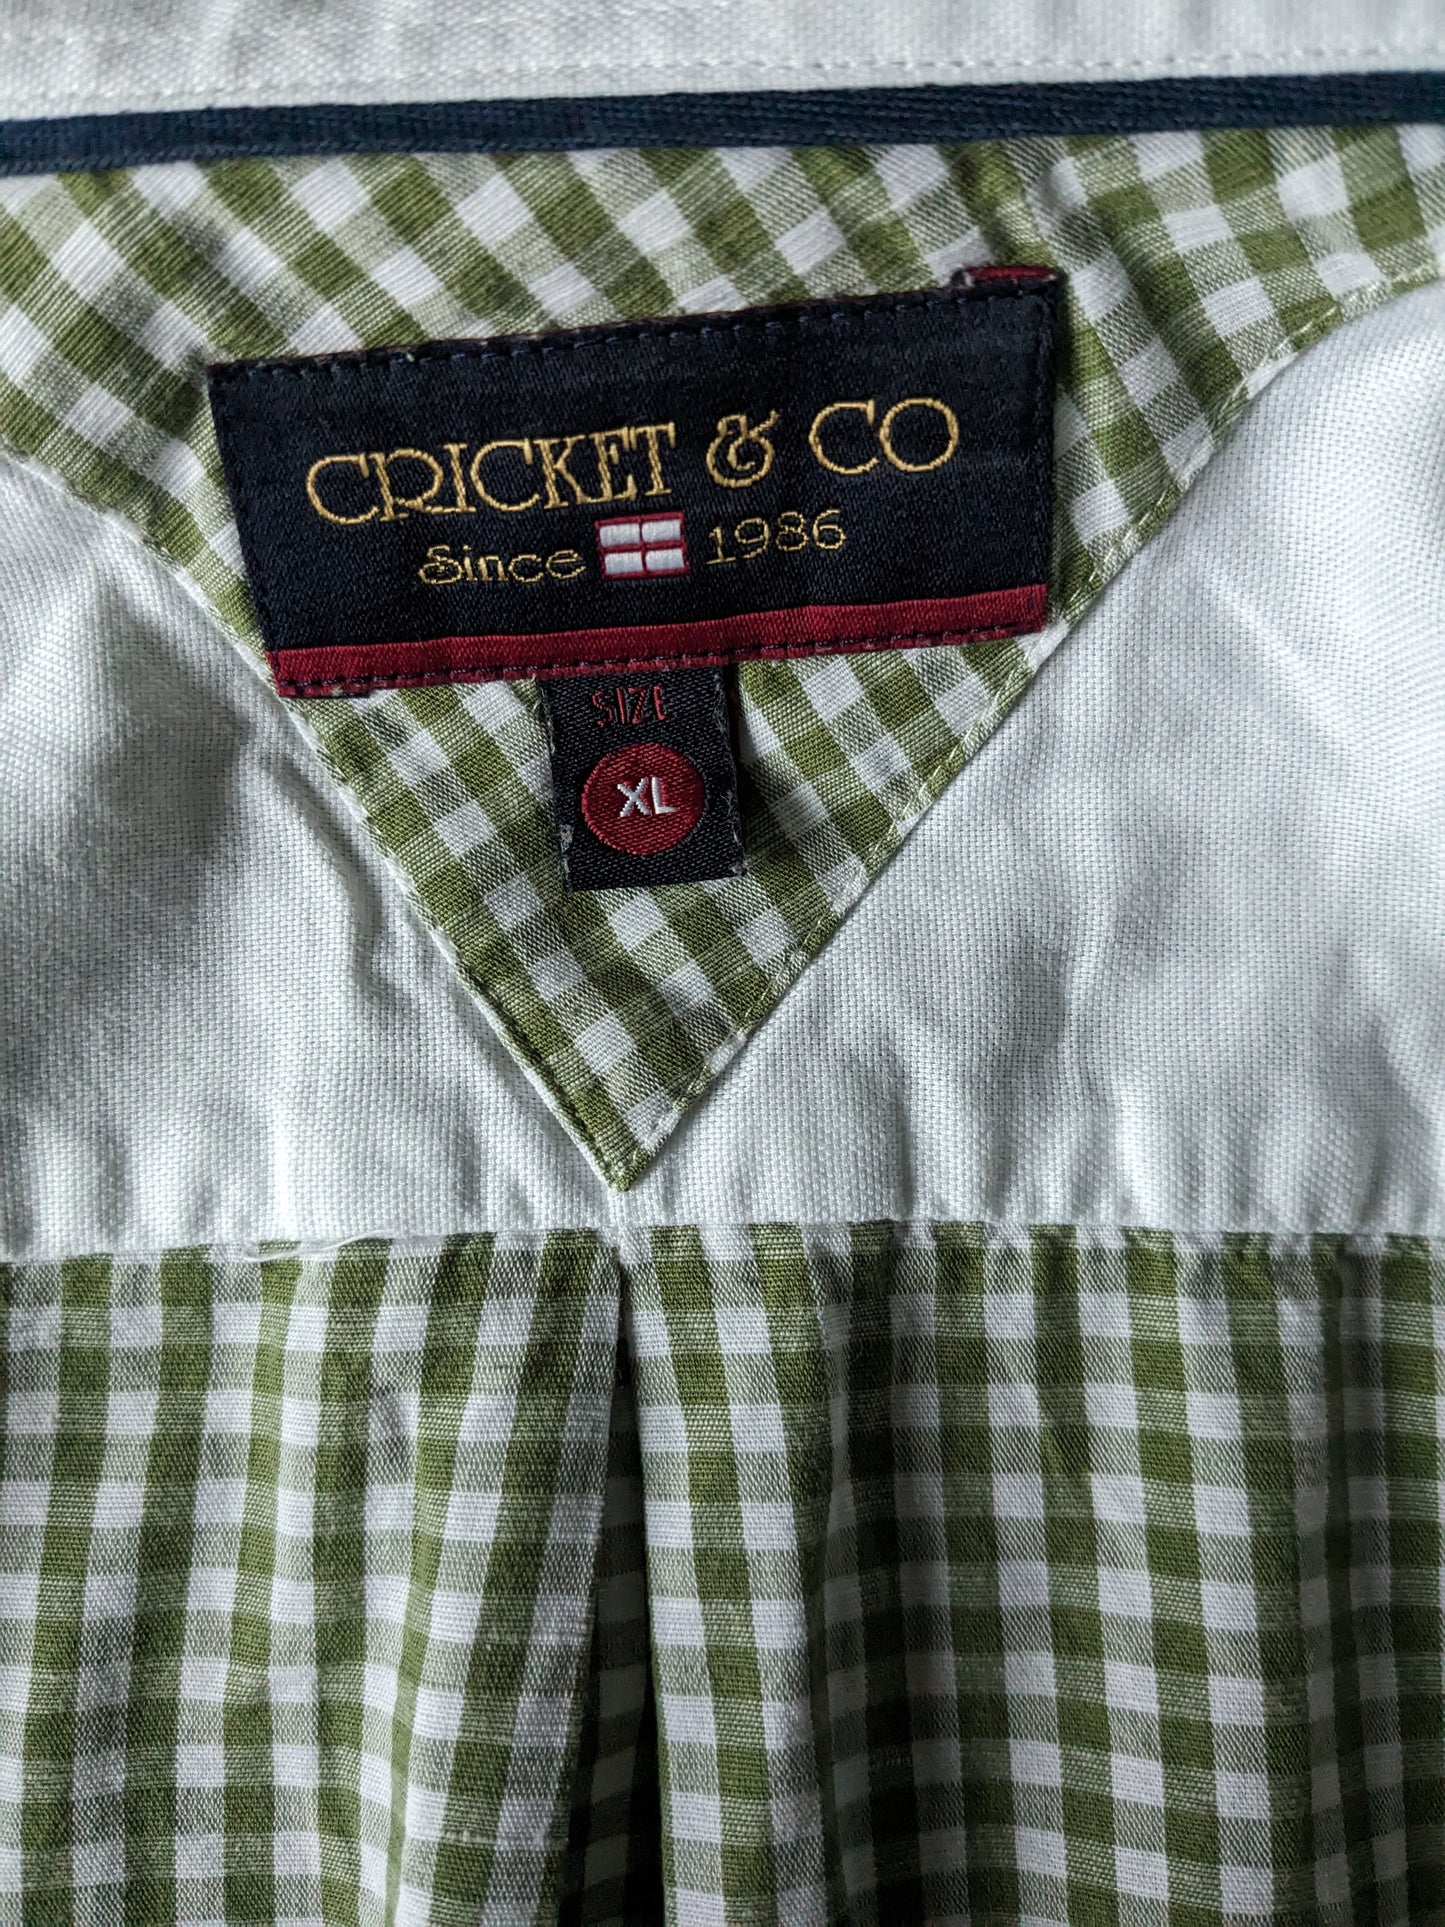 Cricket & Co Shirt. White a scacchi verdi. Taglia XL.